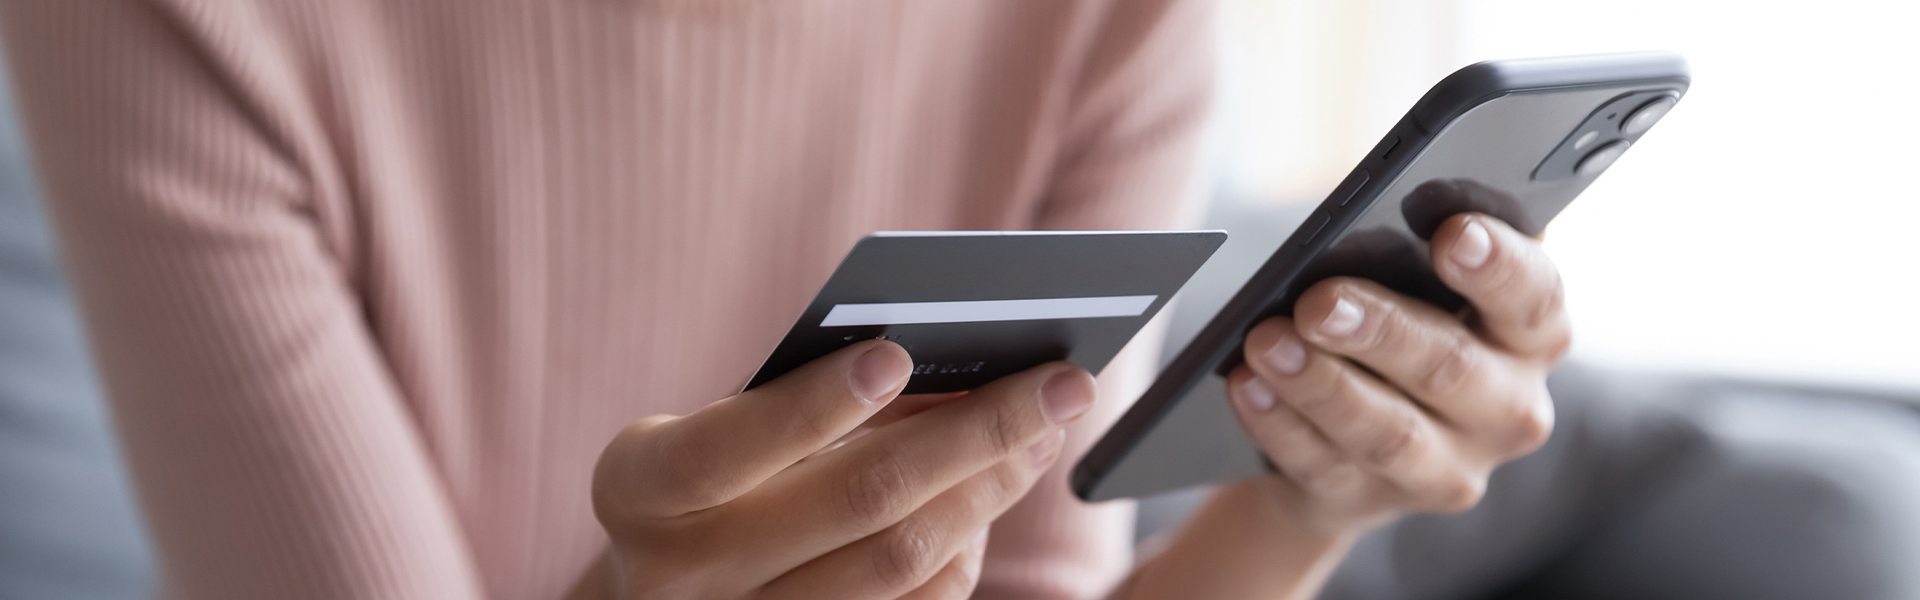 Quá hạn thanh toán thẻ tín dụng có ảnh hưởng gì không?